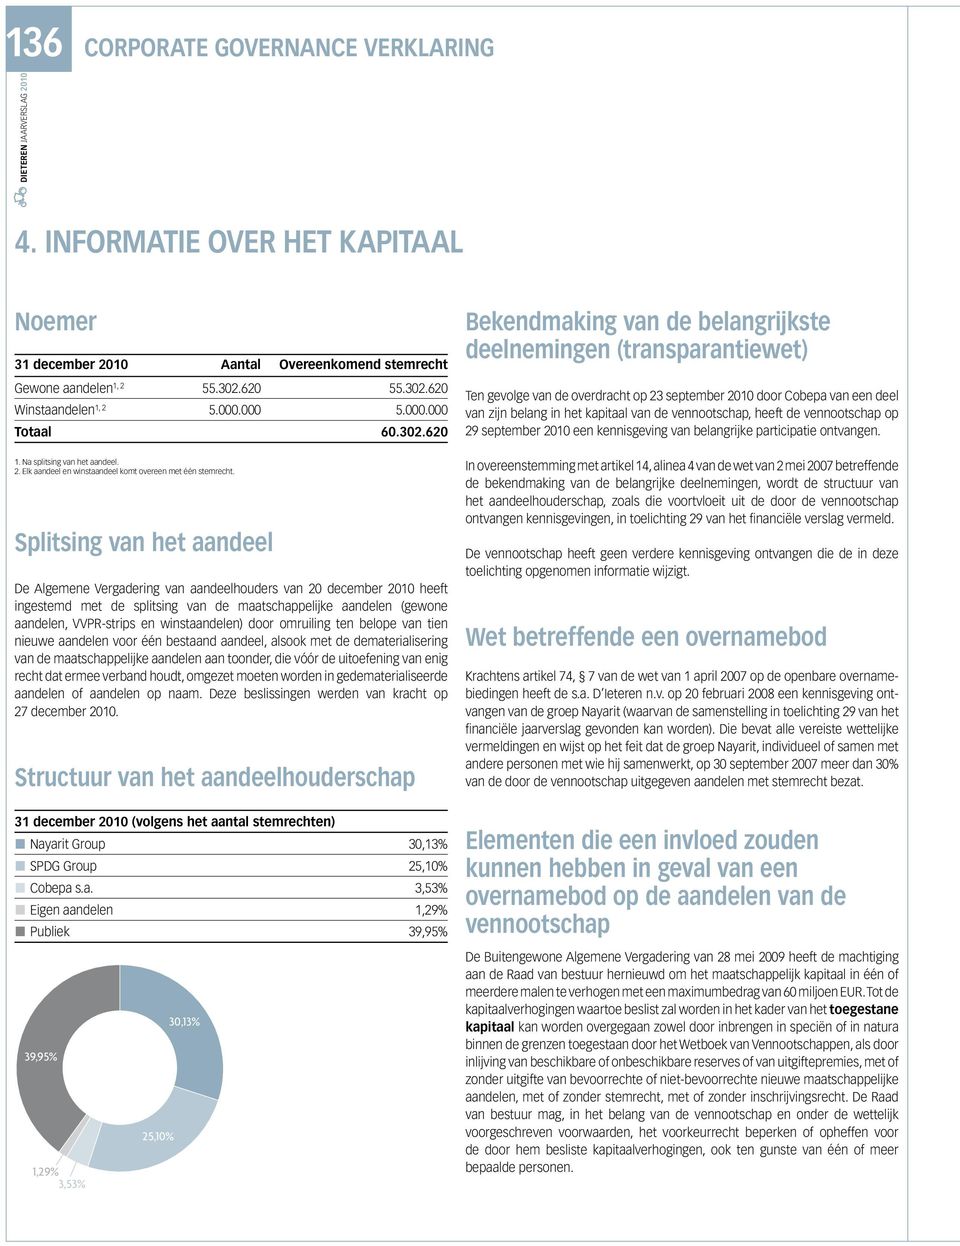 620 Bekendmaking van de belangrijkste deelnemingen (transparantiewet) Ten gevolge van de overdracht op 23 september 2010 door Cobepa van een deel van zijn belang in het kapitaal van de vennootschap,